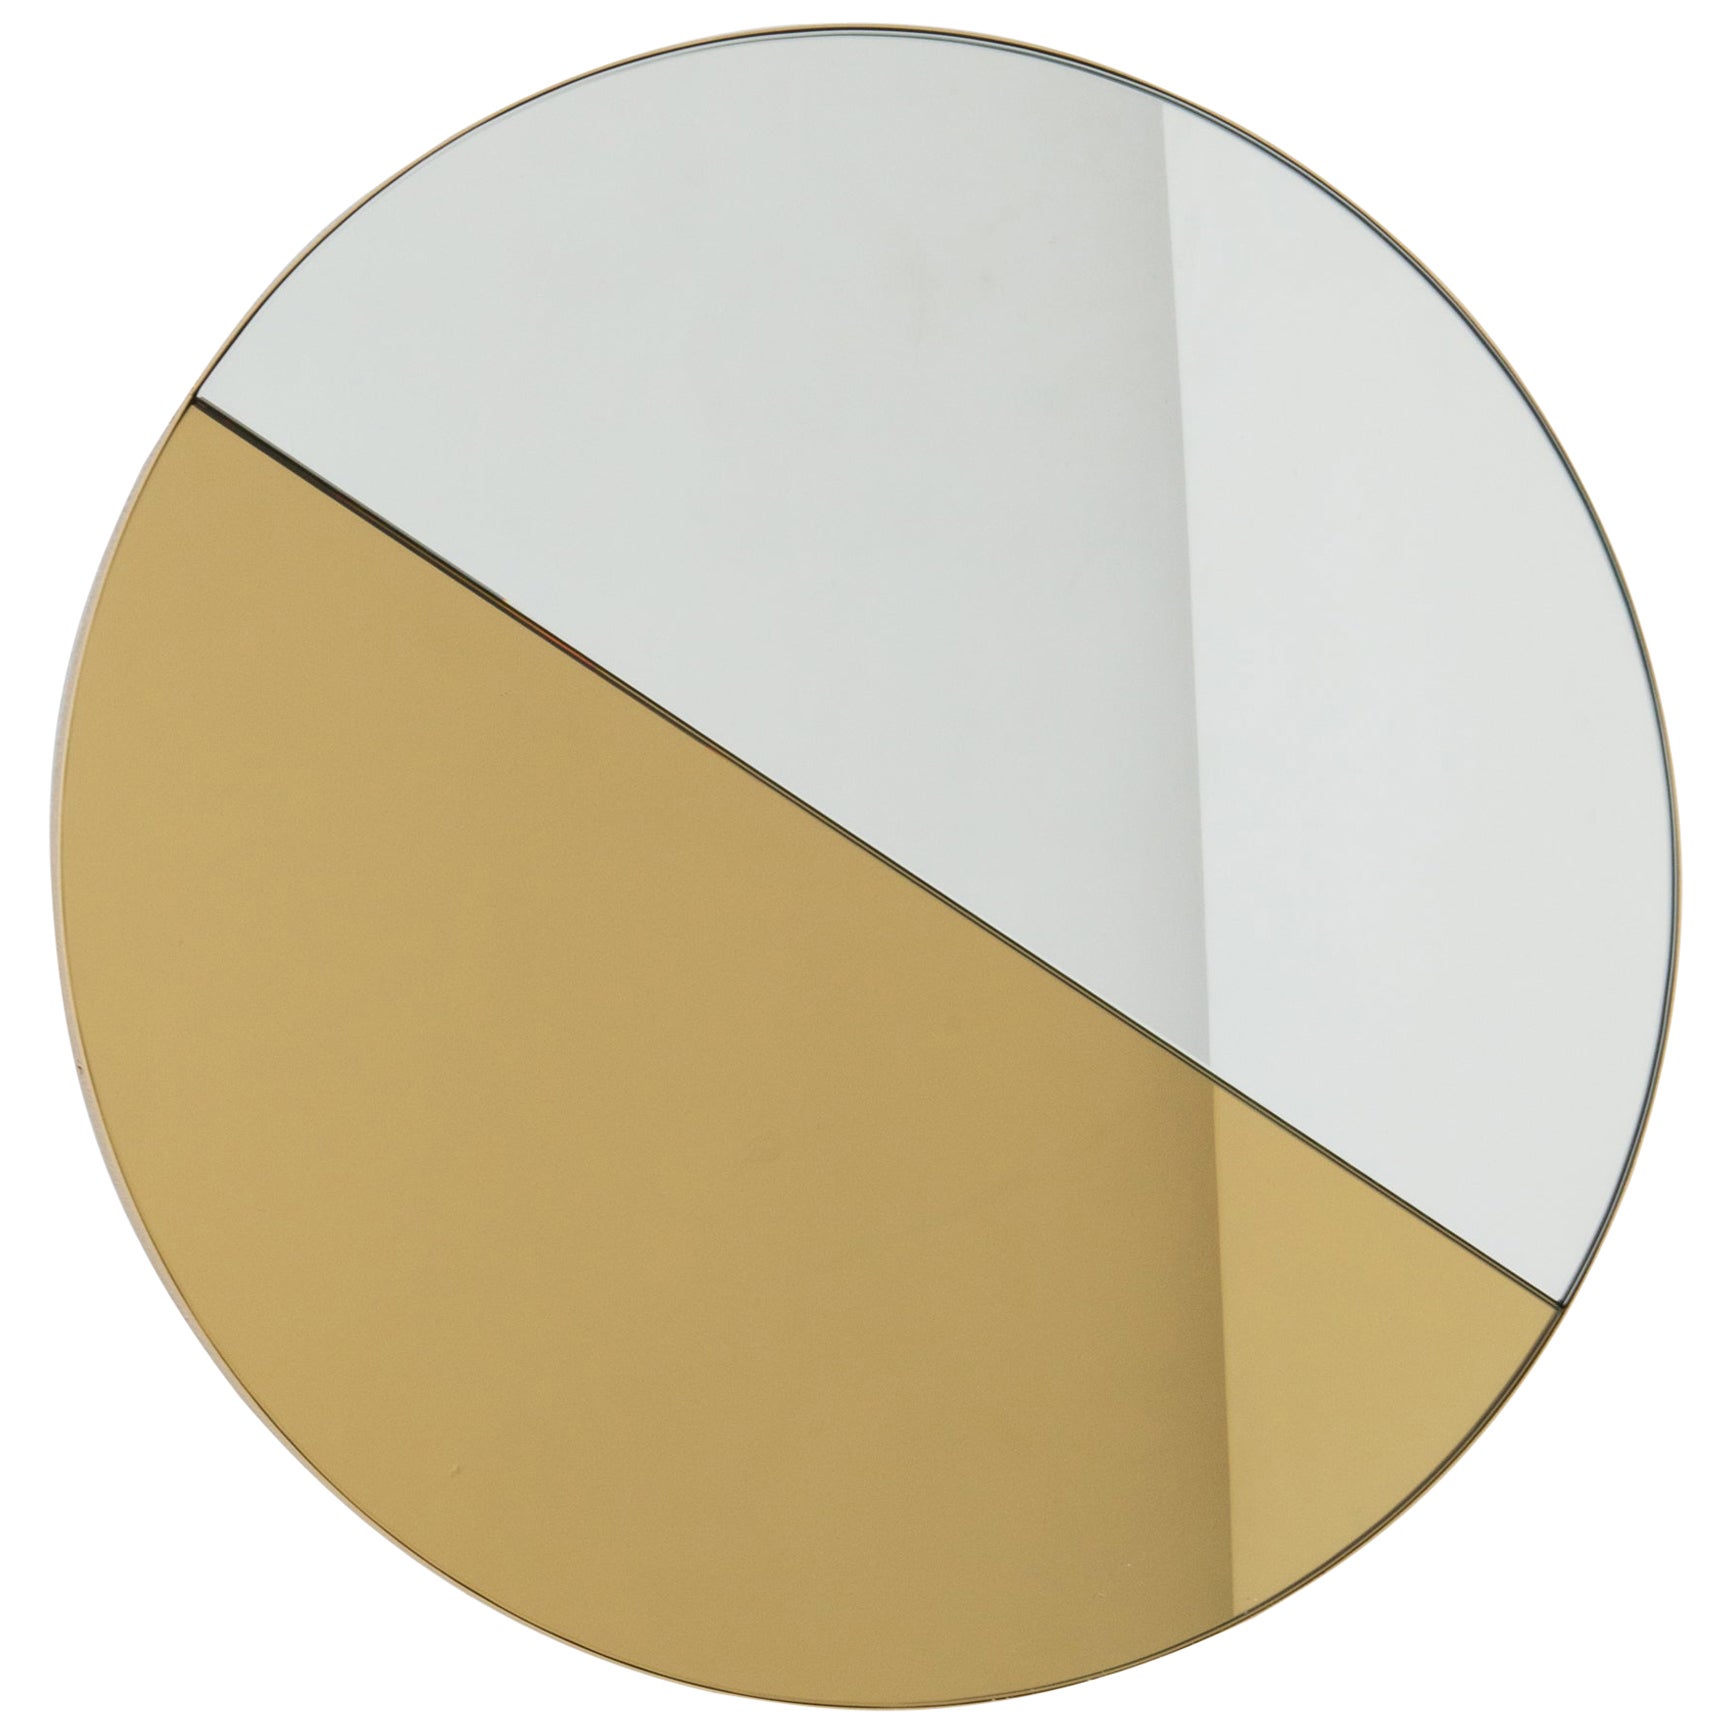 Miroir rond Orbis Dualis teinté or et argent avec cadre en laiton, standard